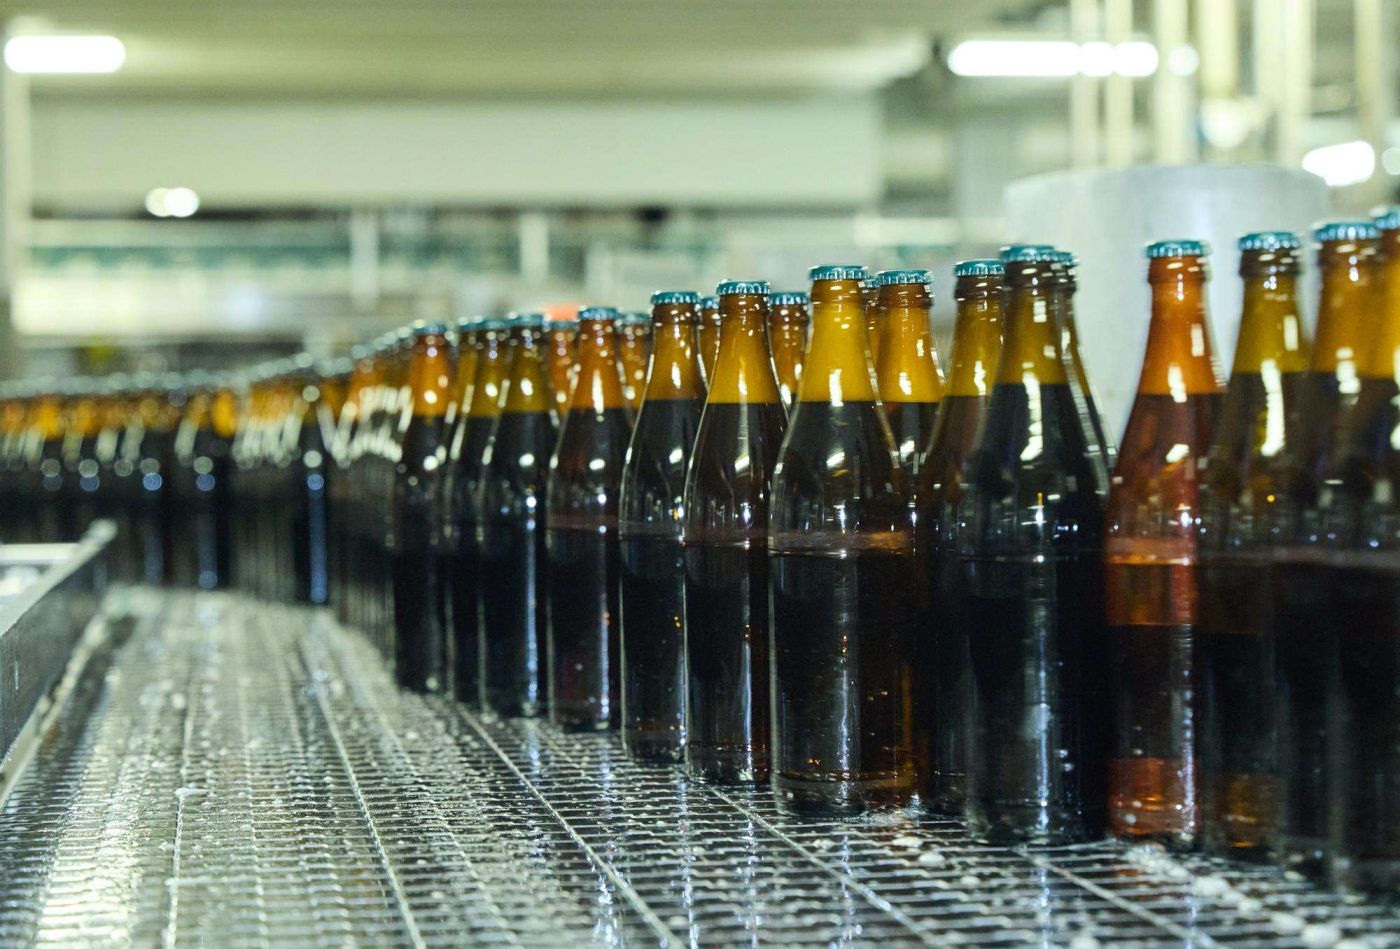 Befüllte Bierflaschen auf ihrem Weg zur Etikettierung.